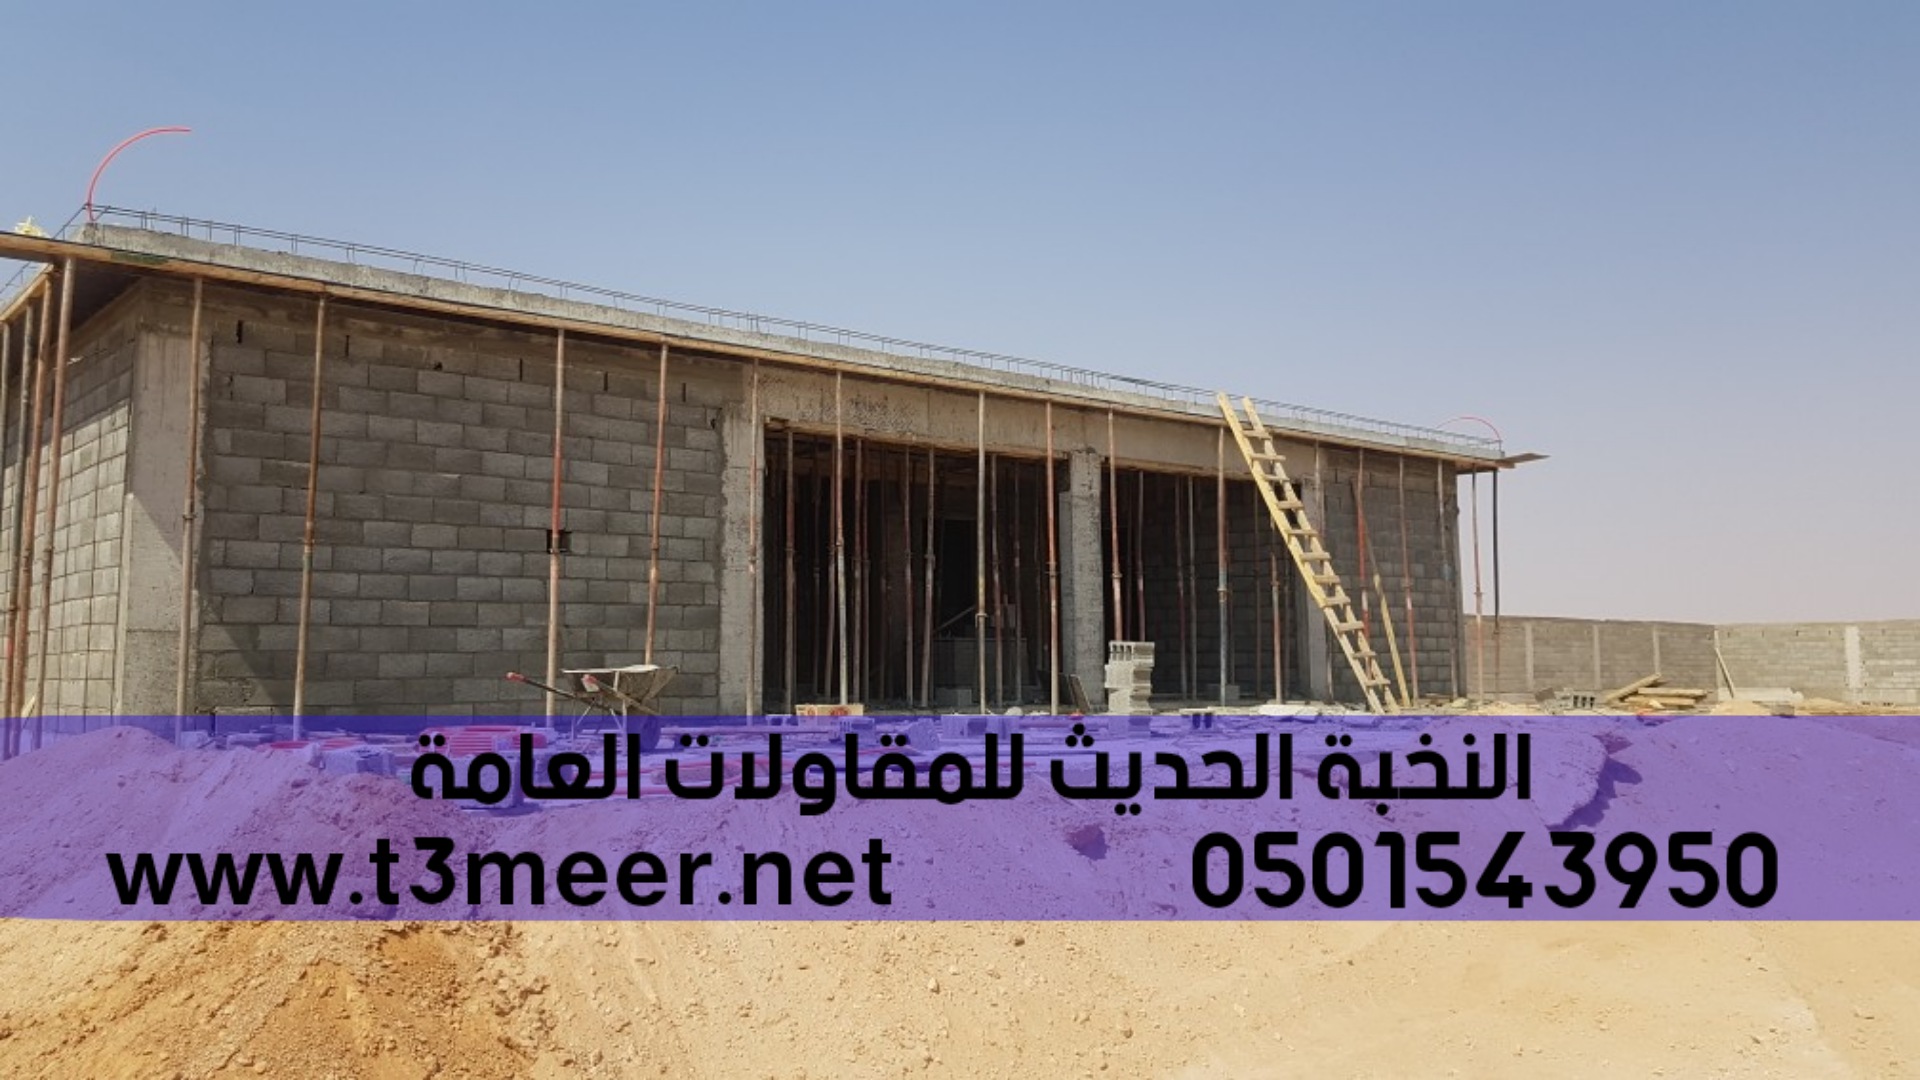 بناء وتشييد المباني بدقة وجودة عالية, 0501543950  P_2489qjo273